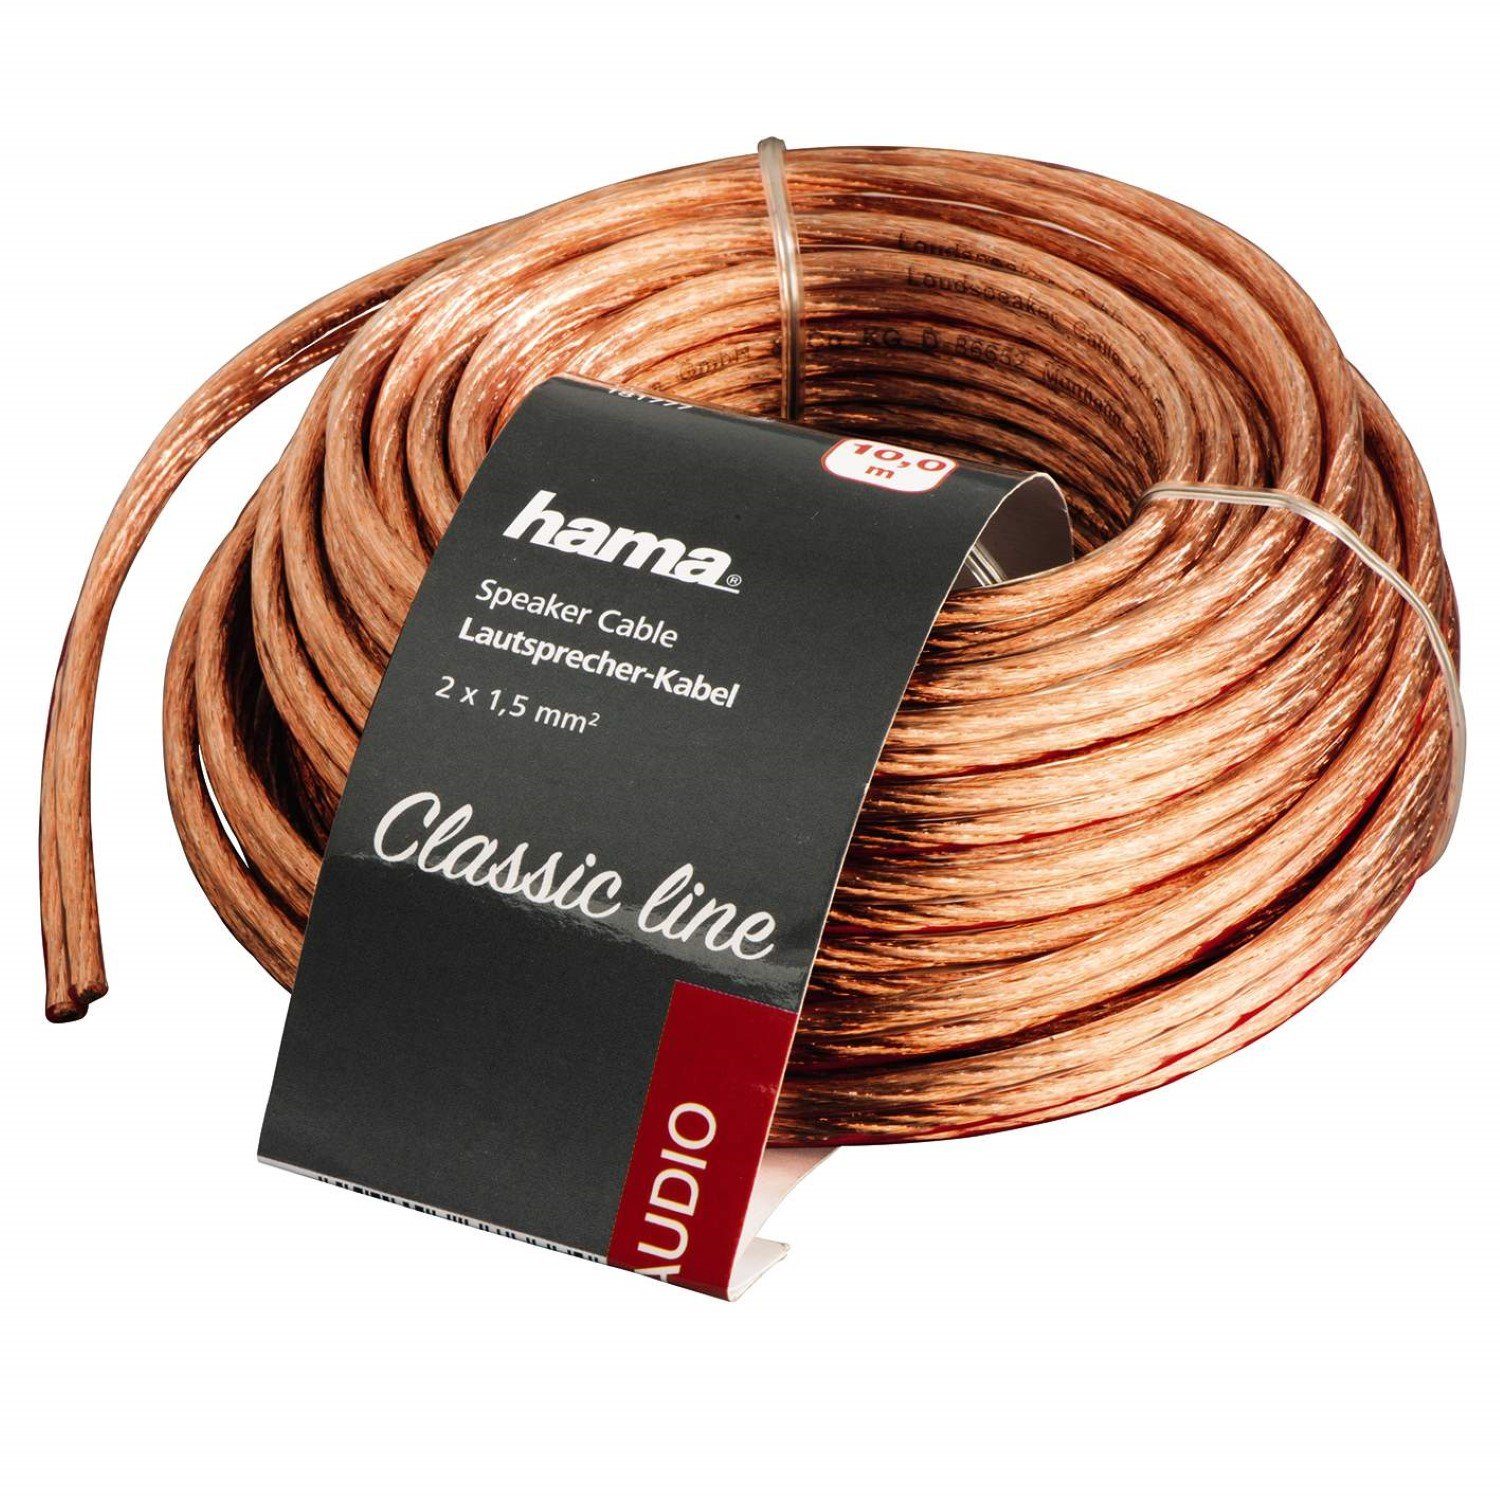 Hama HQ 10m Lautsprecher-Kabel 2x 1,5mm² dick Audio-Kabel, Roh